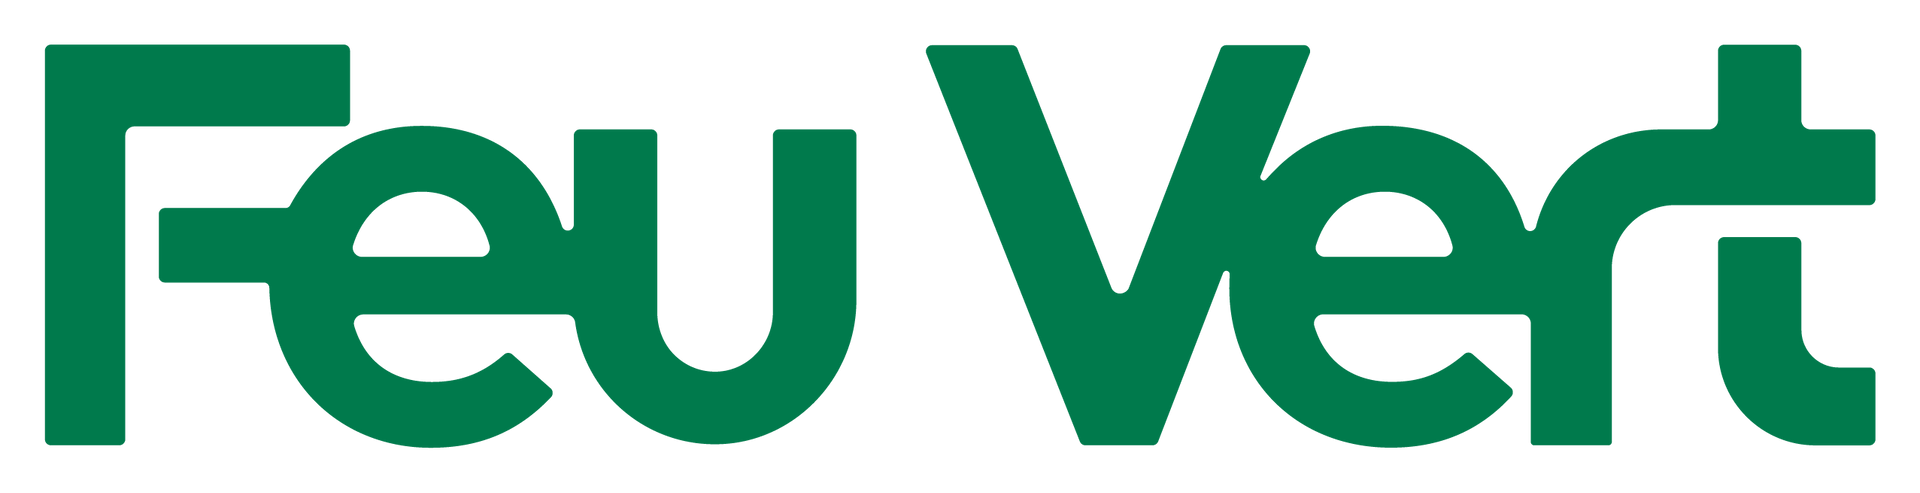 Feu Vert logo empresa colaboradora con SecuriBath